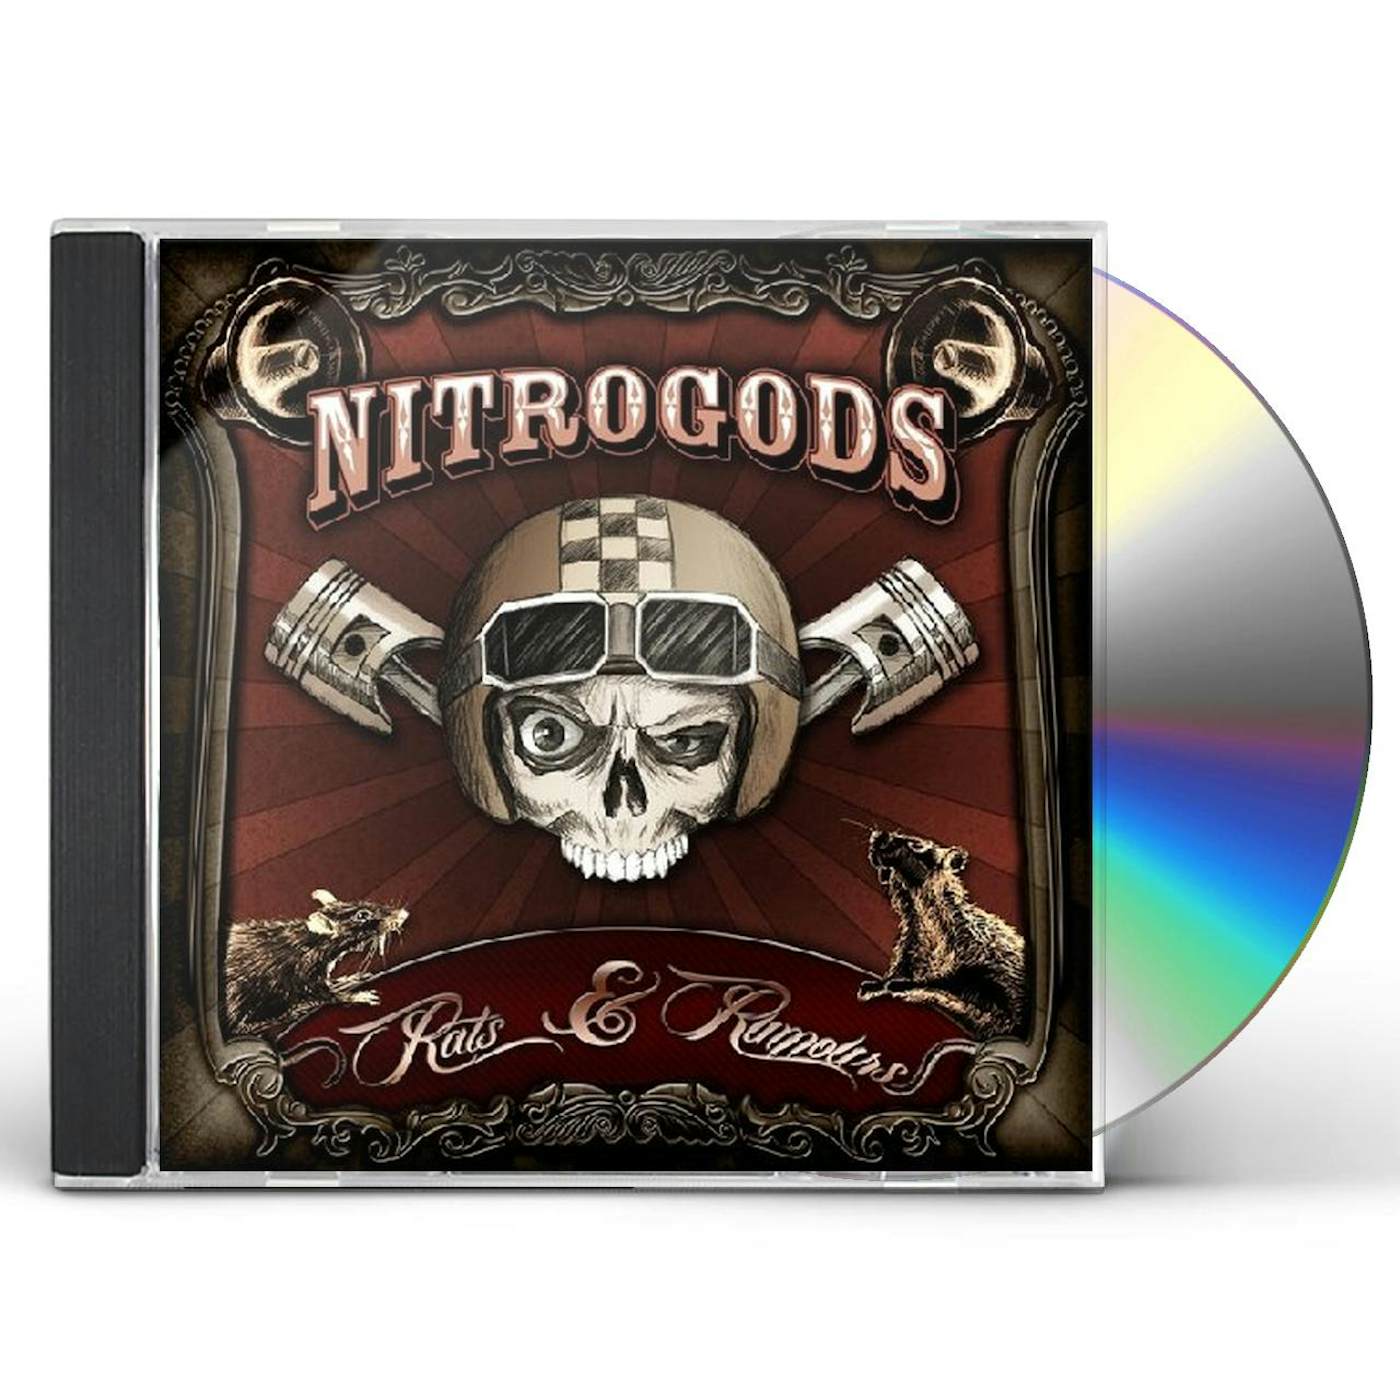 Nitrogods RATS & RUMOURS CD